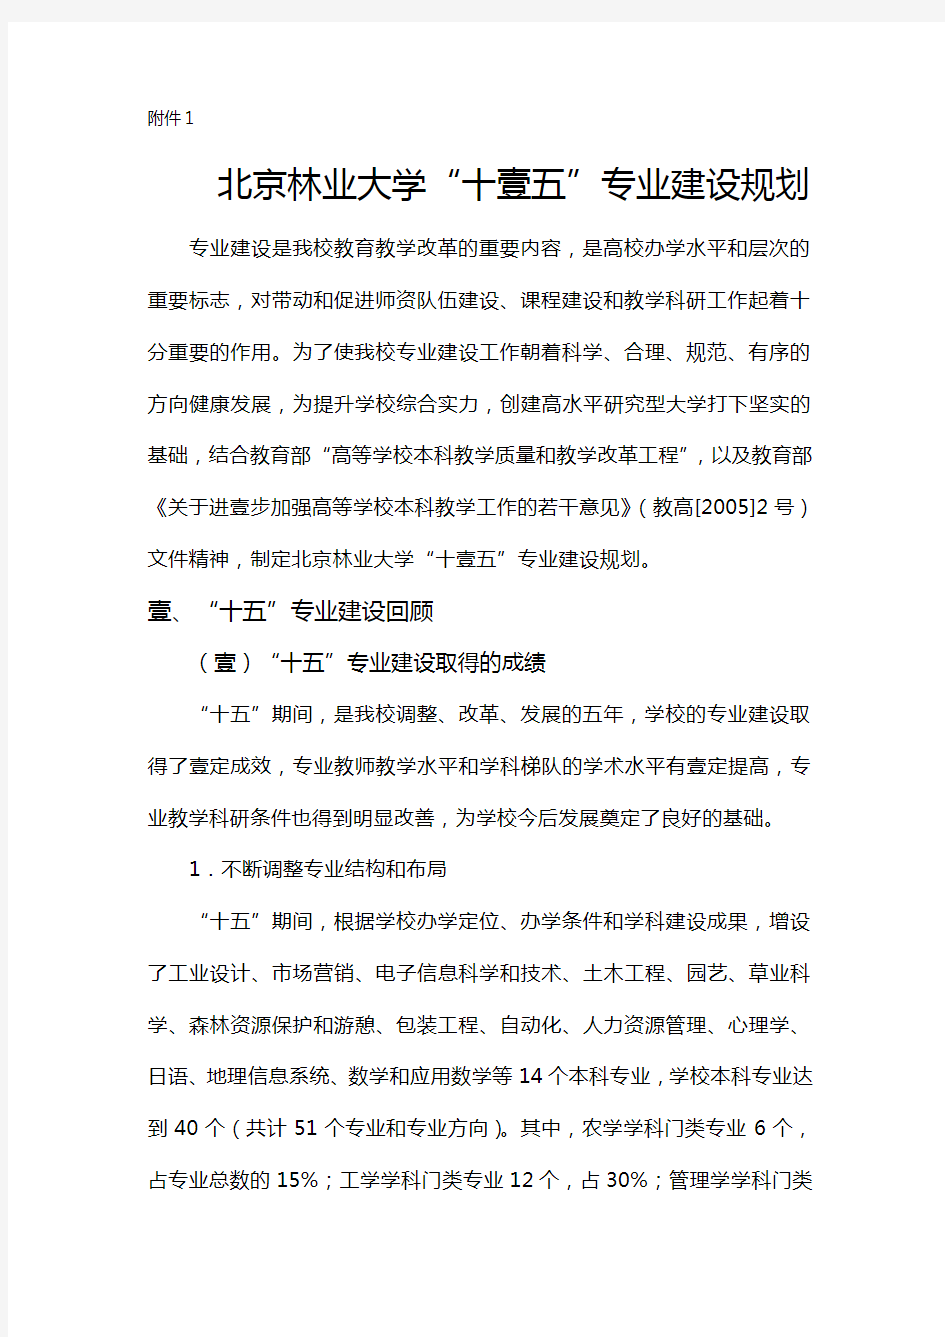 2020年(发展战略)浏览该文件江汉大学十一五学科专业建设发展规划